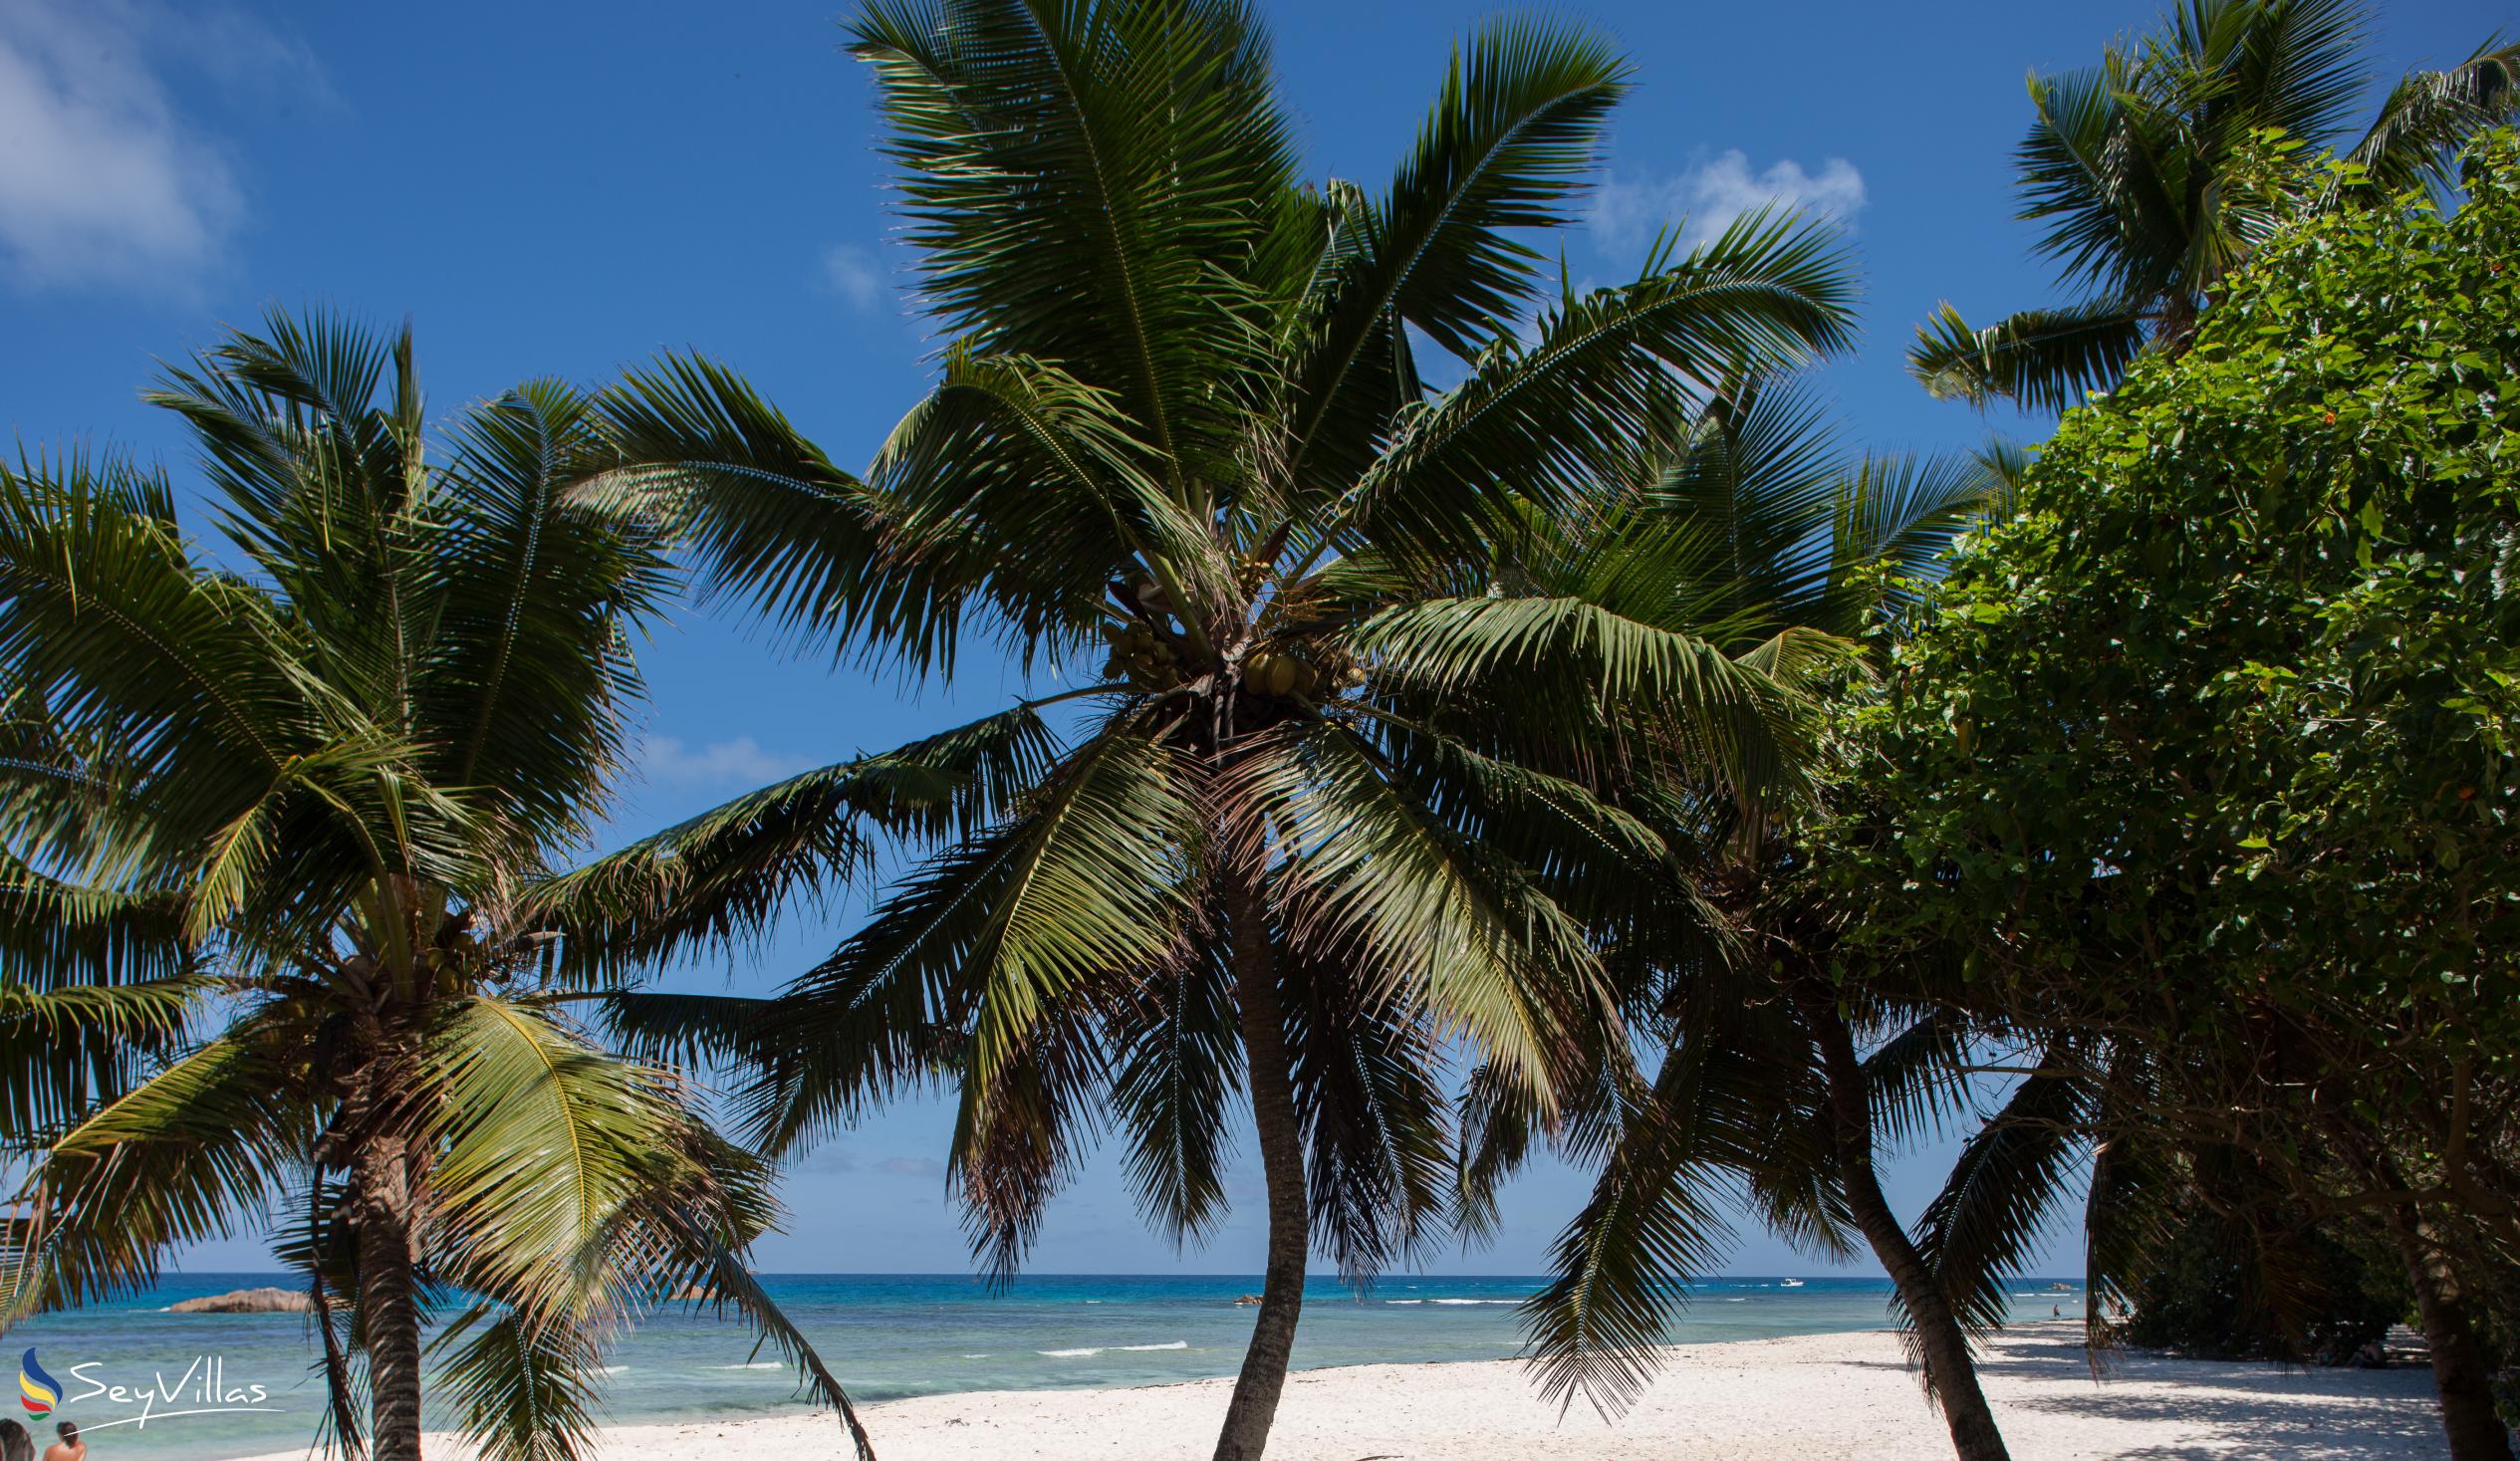 Photo 38: O'Soleil Chalets - Beaches - La Digue (Seychelles)